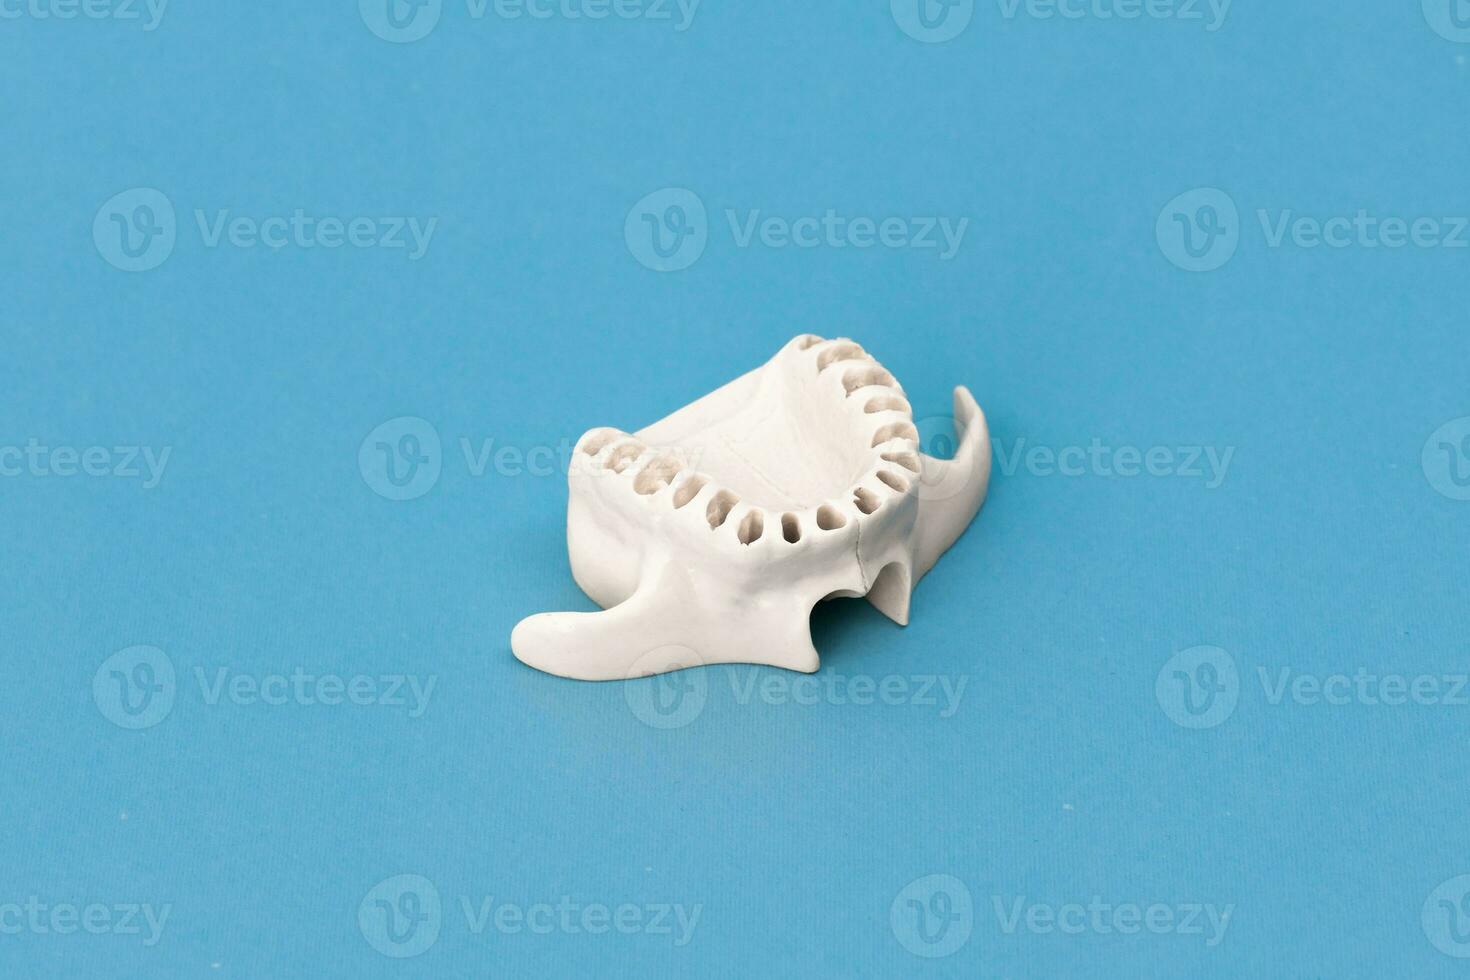 superiore umano mascella senza denti modello medico impiantare isolato su blu sfondo. salutare denti, dentale cura e ortodontico concetto. foto